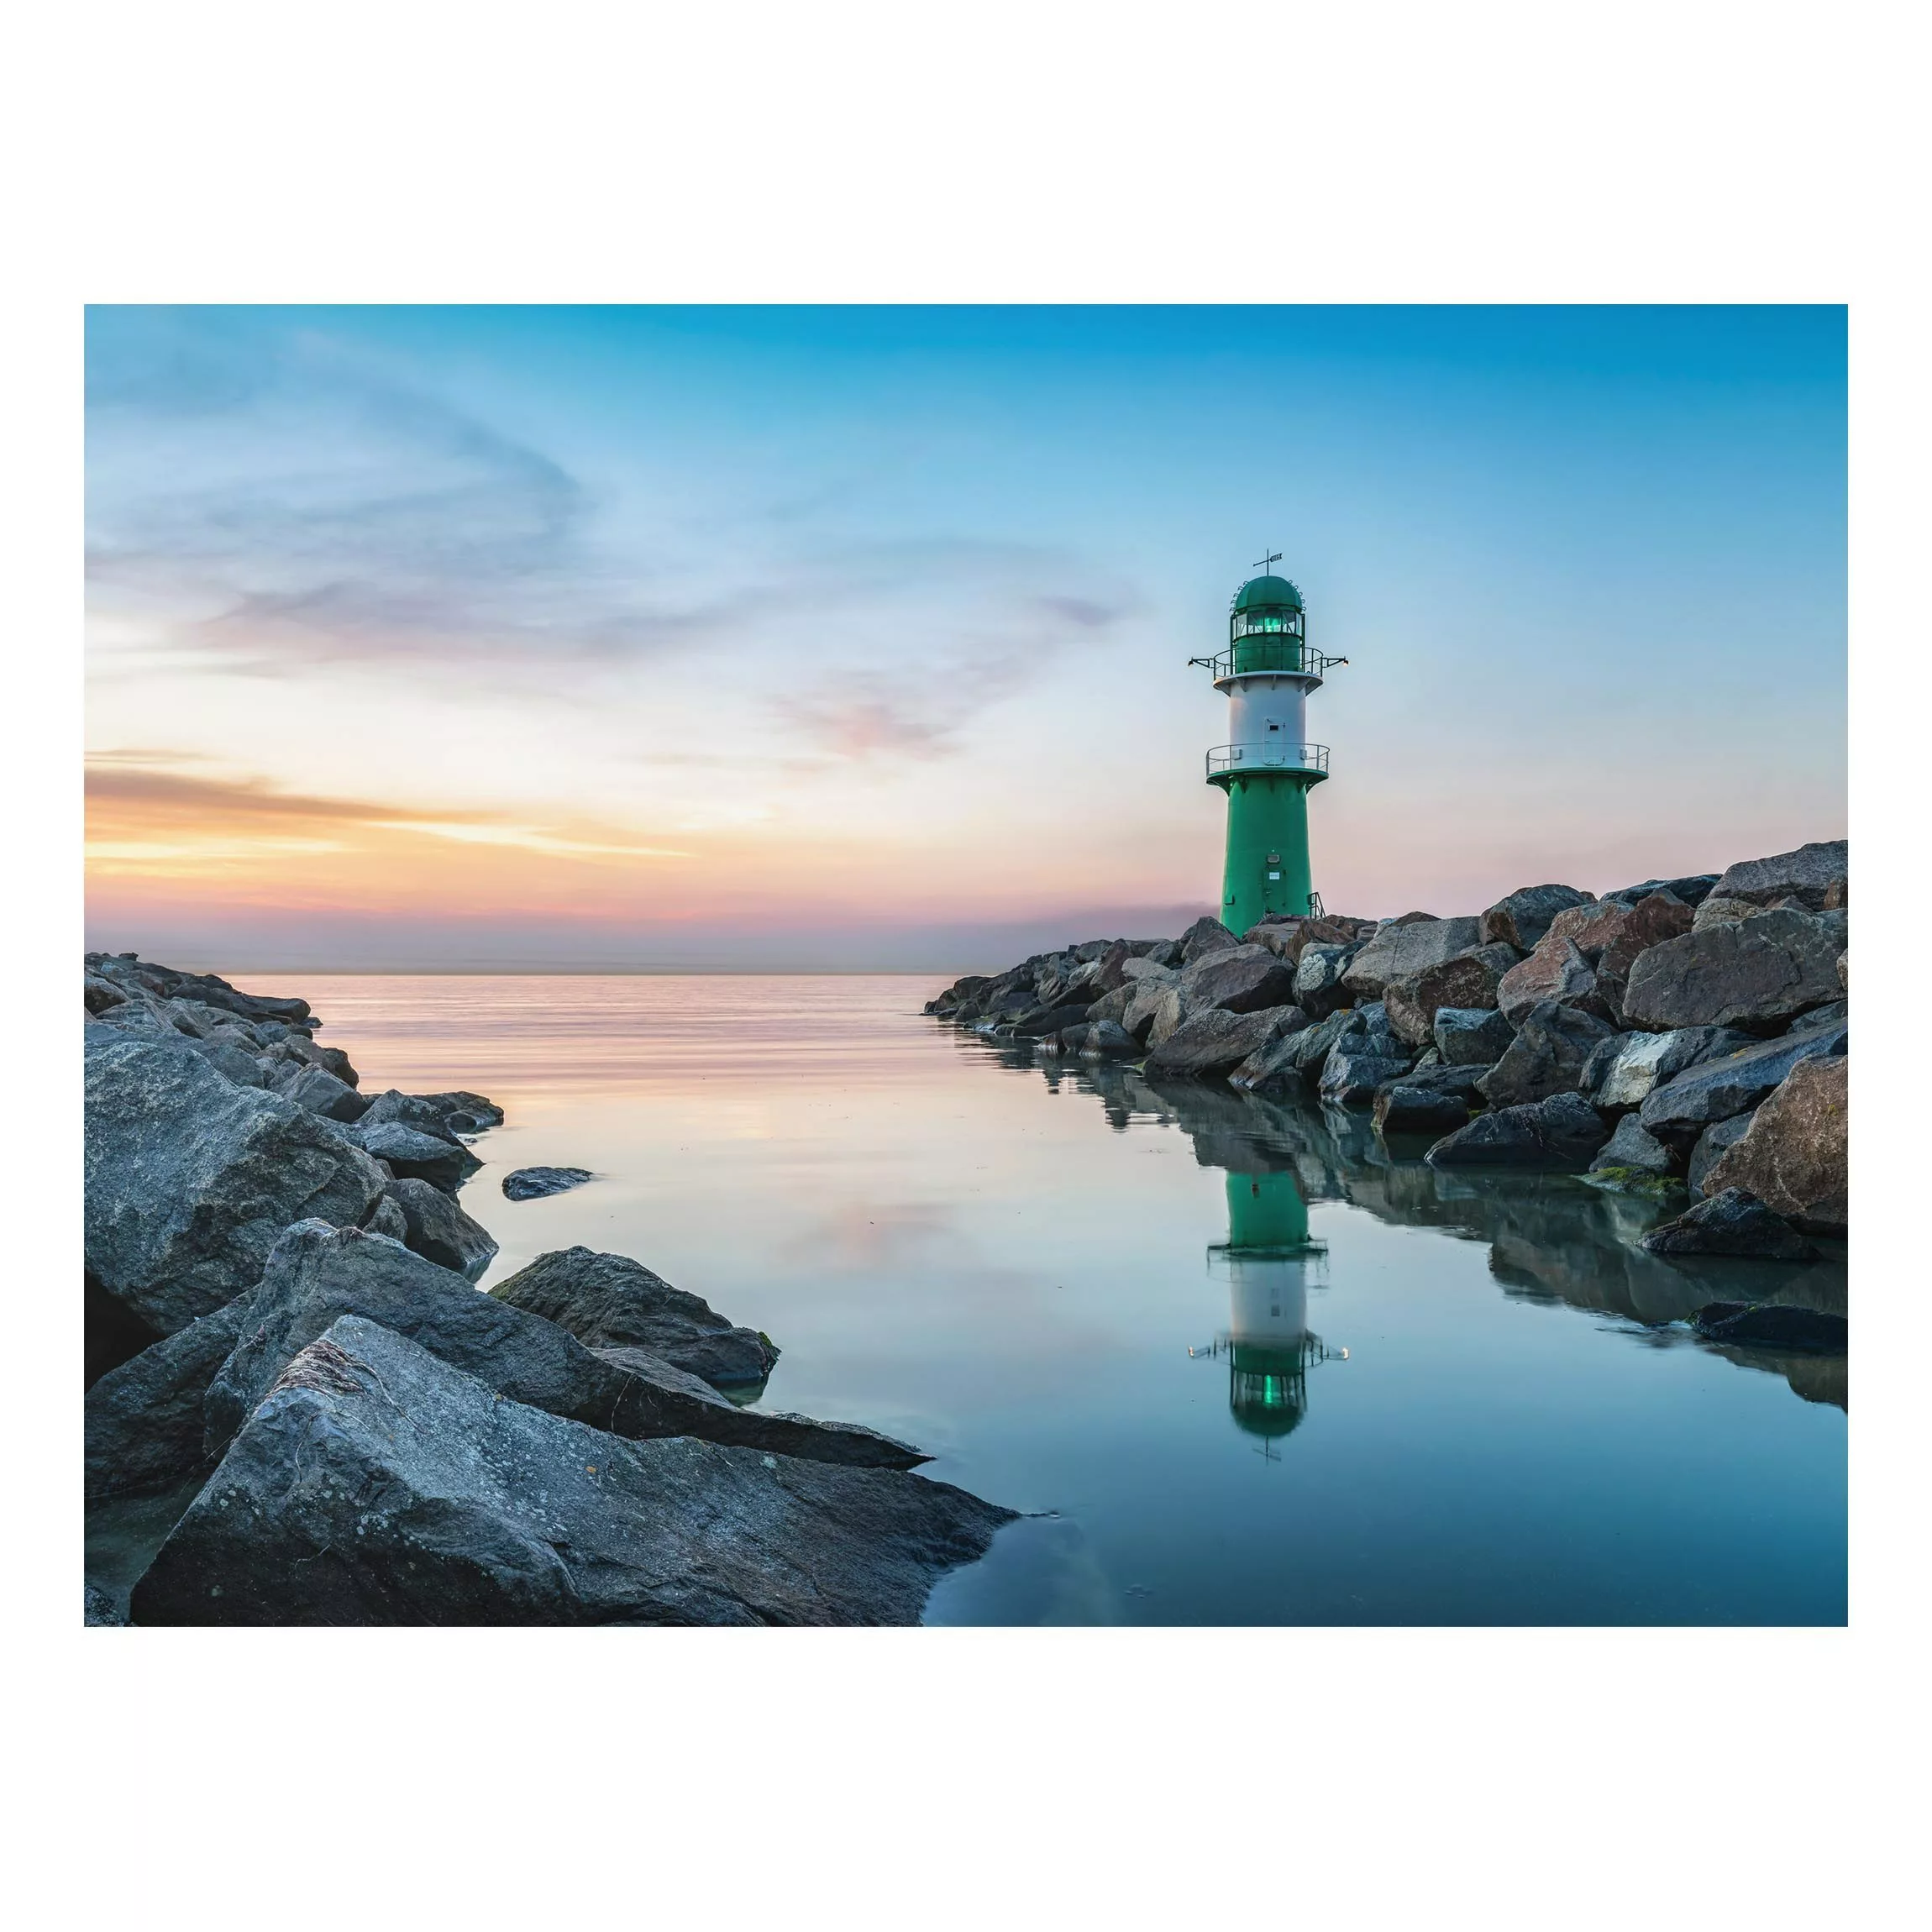 Alu-Dibond Bild Sunset at the Lighthouse günstig online kaufen